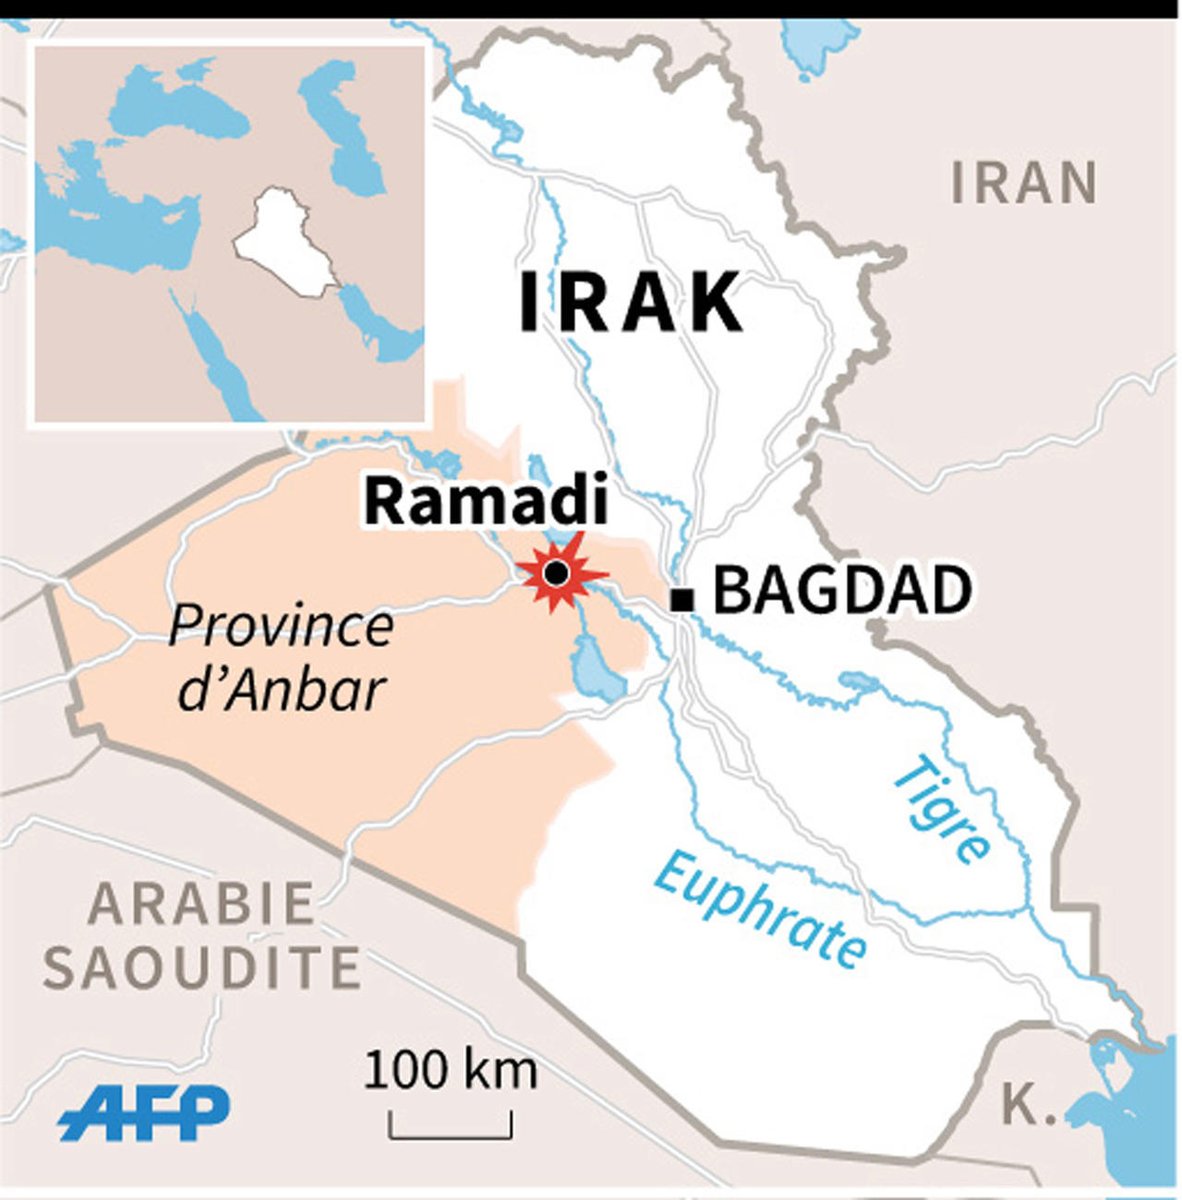 17 mai 2015. Après la guerre éclair couronnée de succès, l’État islamique fait tomber Ramadi, après plus d’un an d’affrontements. La fameuse stratégie du pardon, évoqué plus haut, fait céder la résistance ennemie.